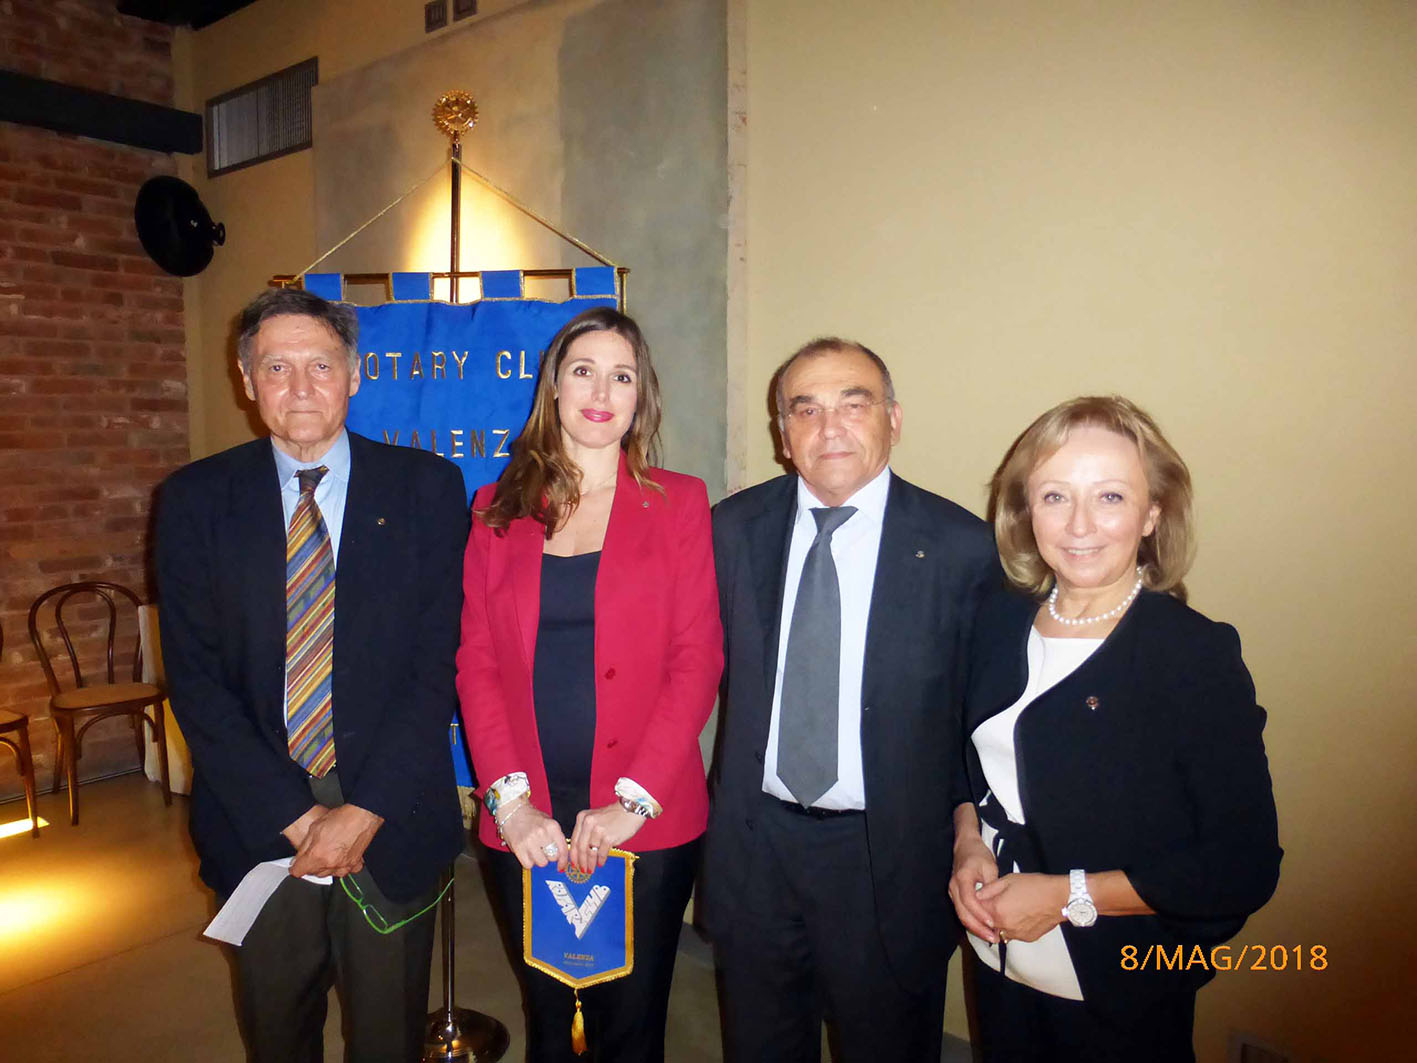 Nuova Socia al Rotary Club Valenza – Avv. Alice Falzoni